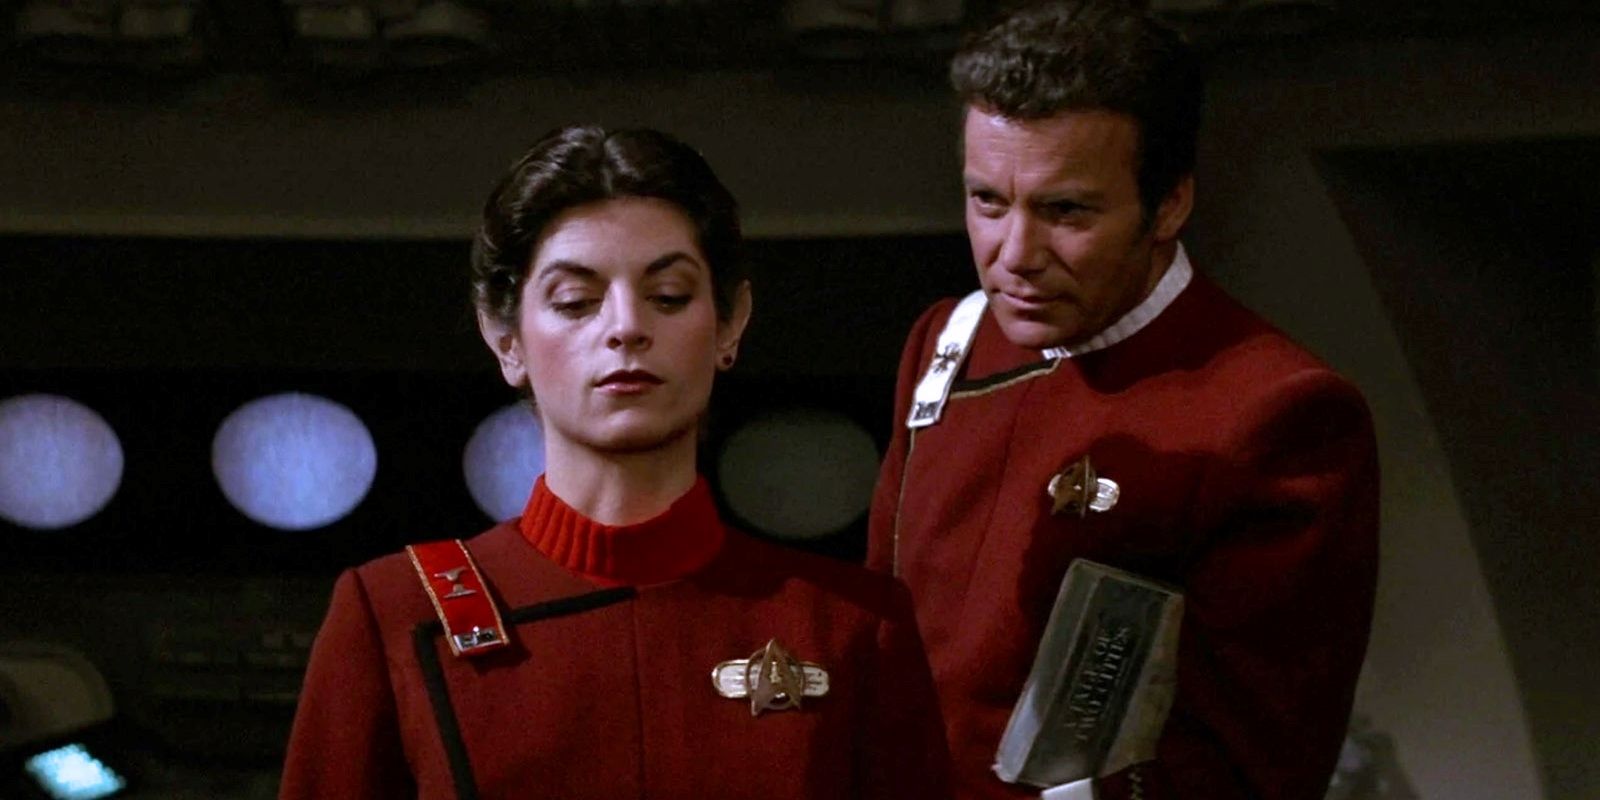 Kirk standing behind Saavik's left shoulder after she failed the Kobayashi Maru test in star trek wrath of khan